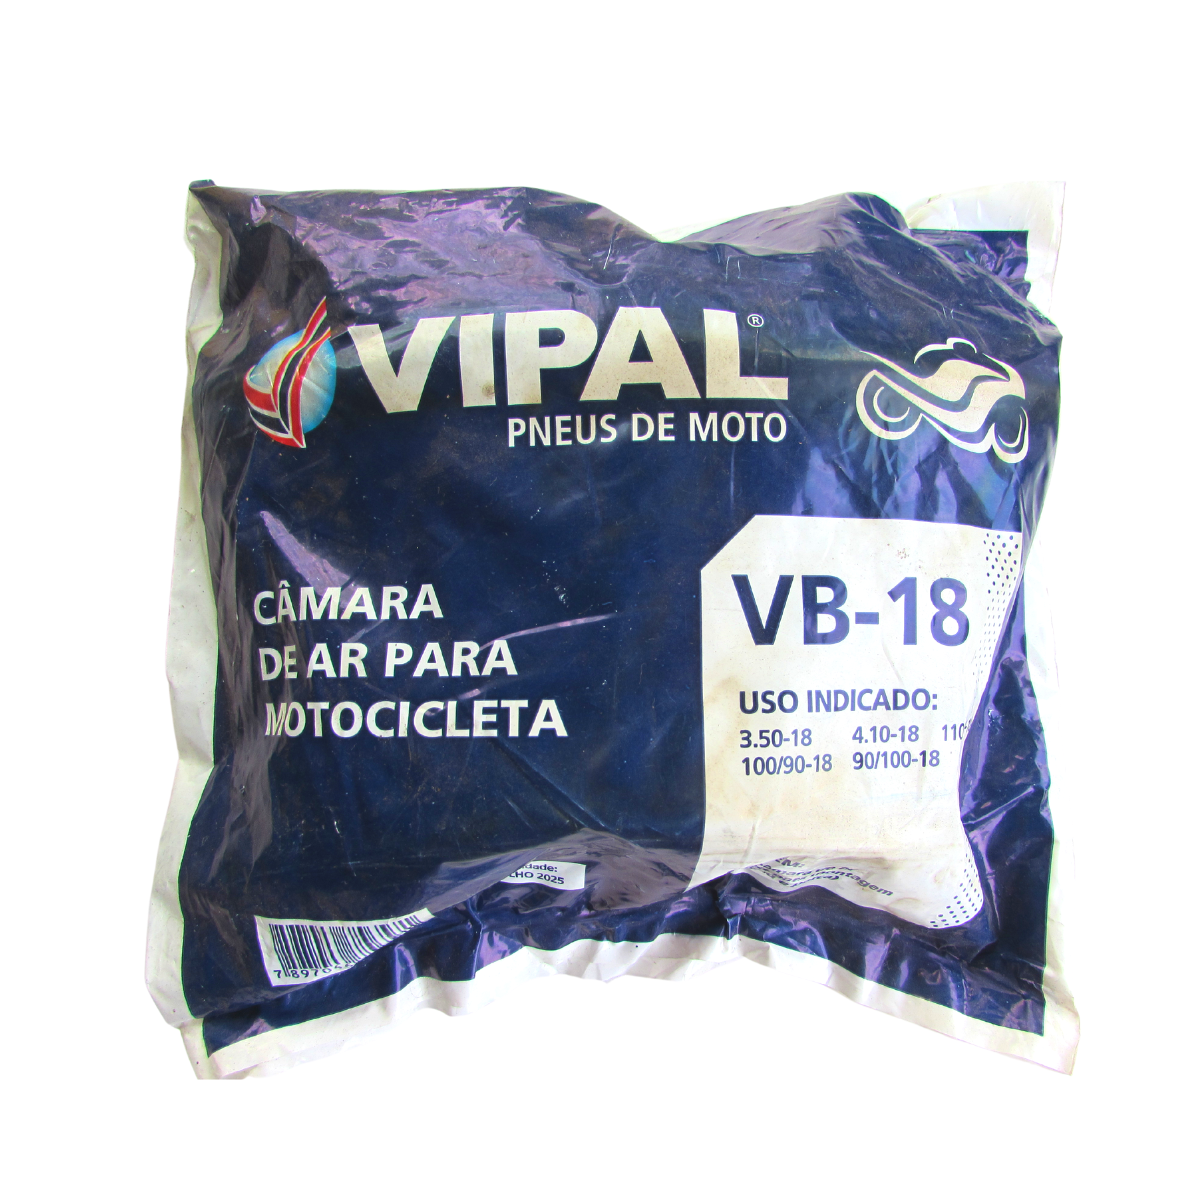 CÃMARA DE AR MOTO VB-18 100/90-18 LARGA VIPAL